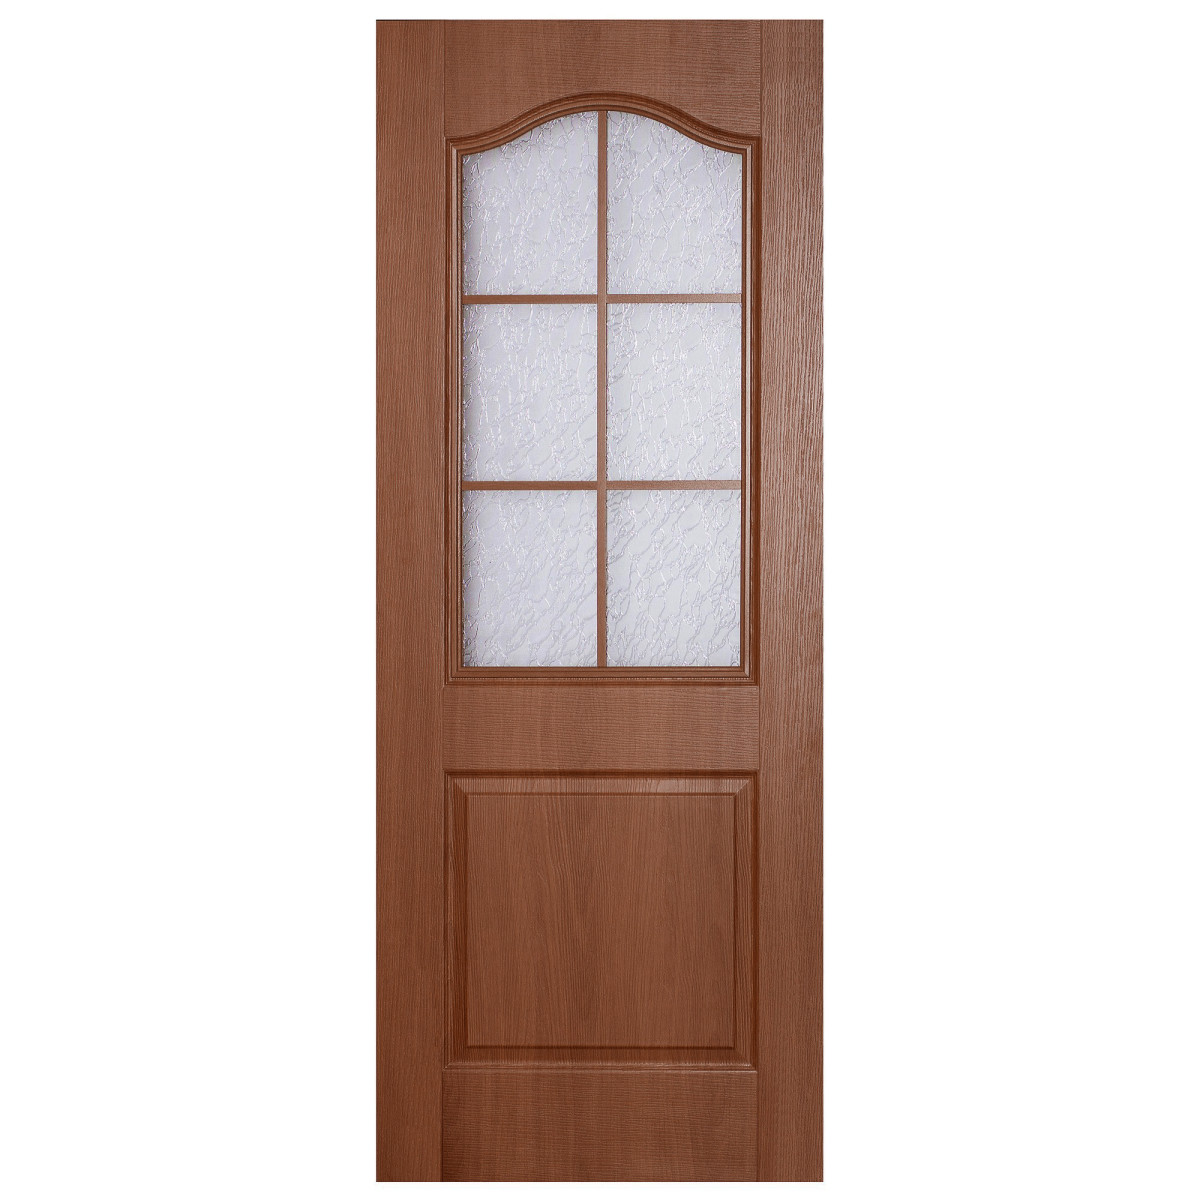 Дверь межкомнатная остеклённая ПВХ Антик 80x200 см цвет итальянский орех